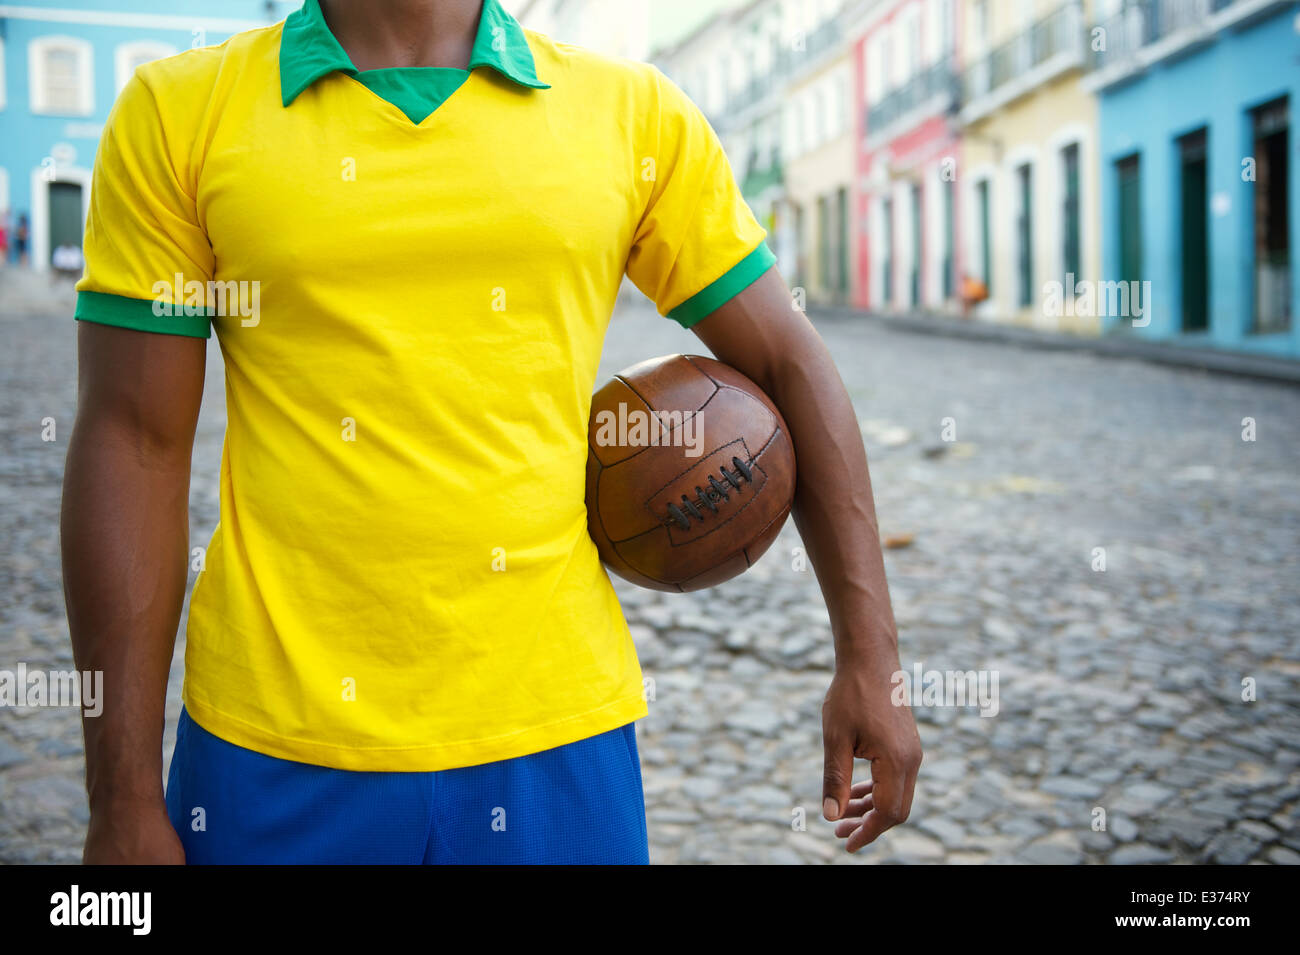 Brazilian soccer player debout sur la rue coloniale Bahia Pelourinho Salvador avec football vintage Banque D'Images